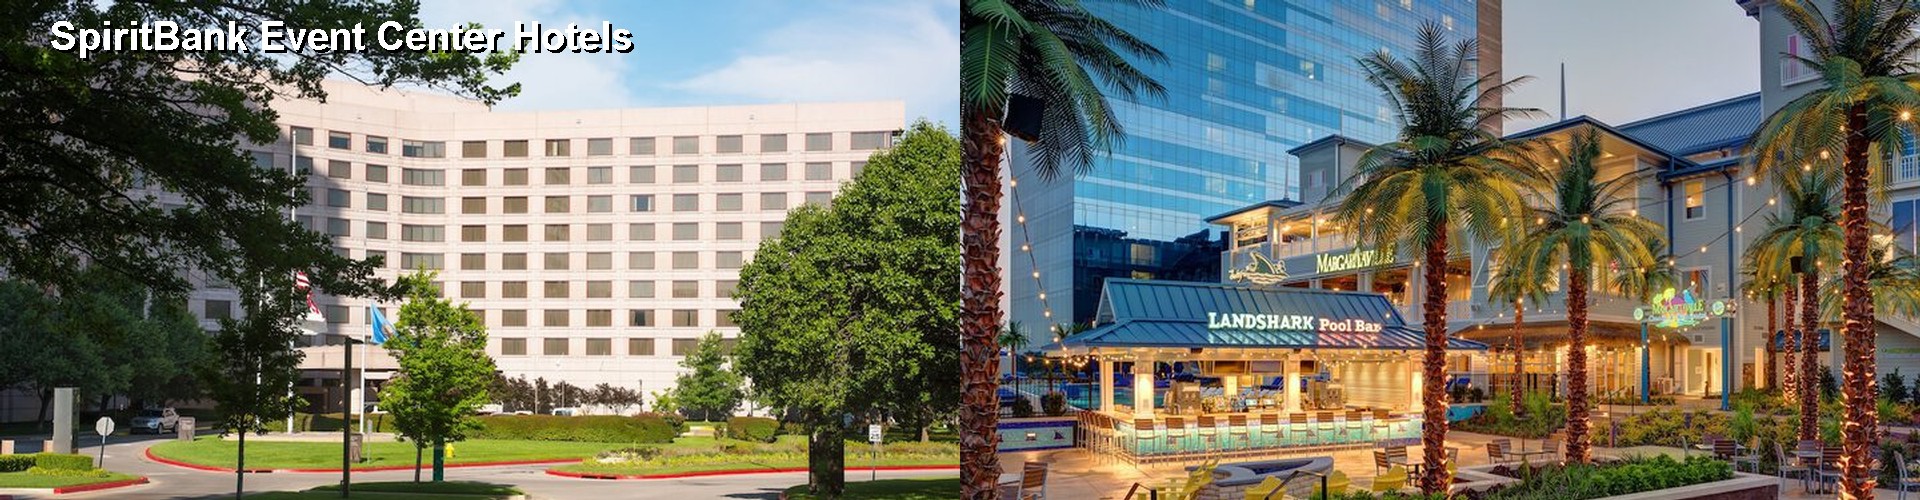 5 Best Hotels near SpiritBank Event Center